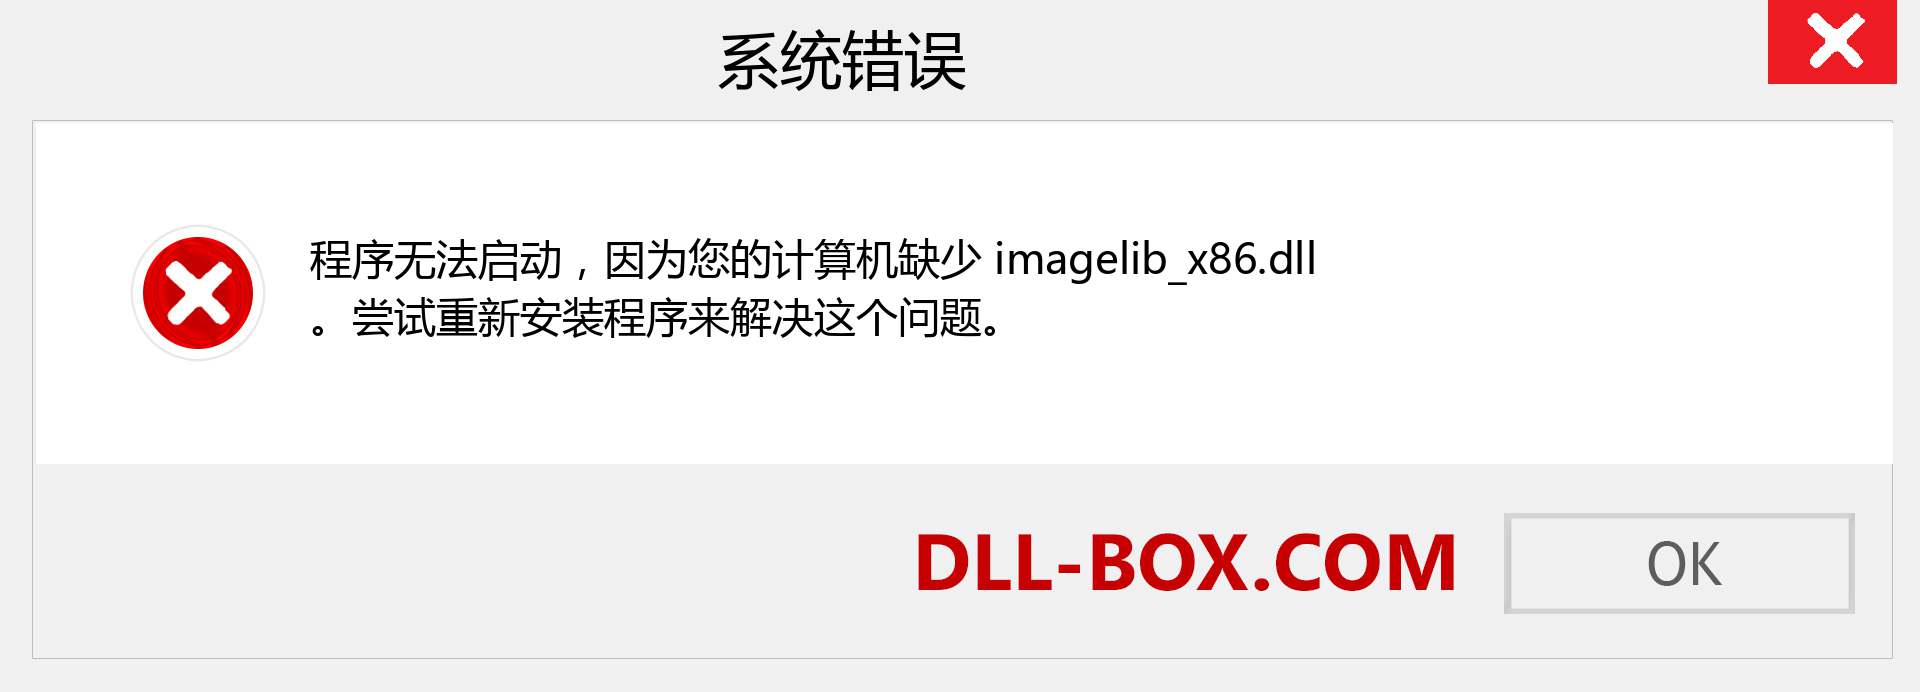 imagelib_x86.dll 文件丢失？。 适用于 Windows 7、8、10 的下载 - 修复 Windows、照片、图像上的 imagelib_x86 dll 丢失错误